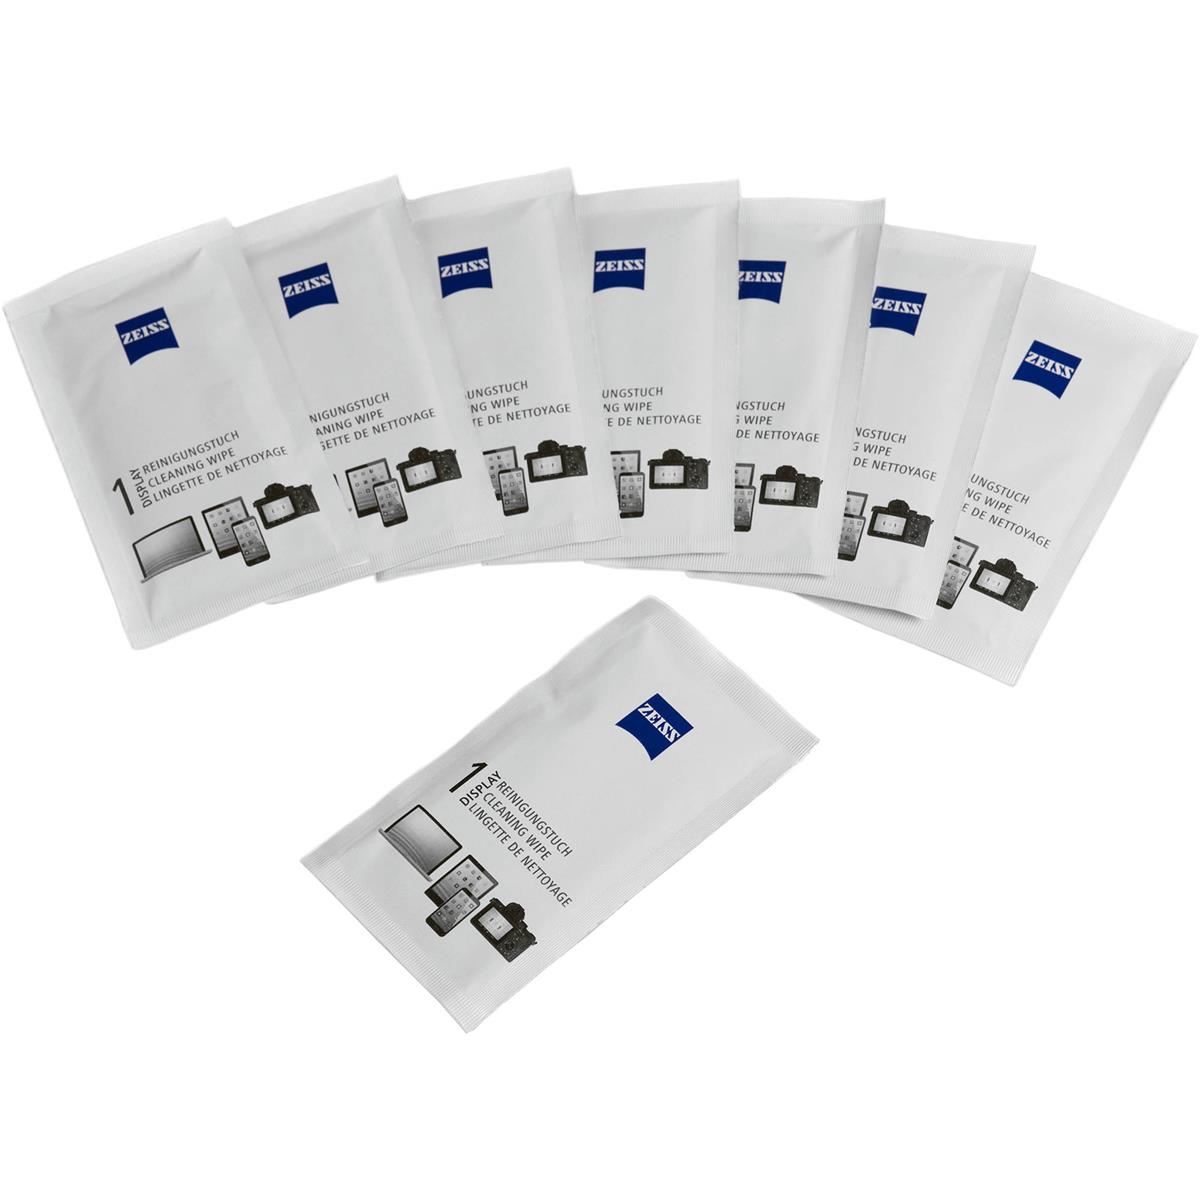 Салфетки для дисплеев Zeiss, упаковка из 30 шт., № 0588-684